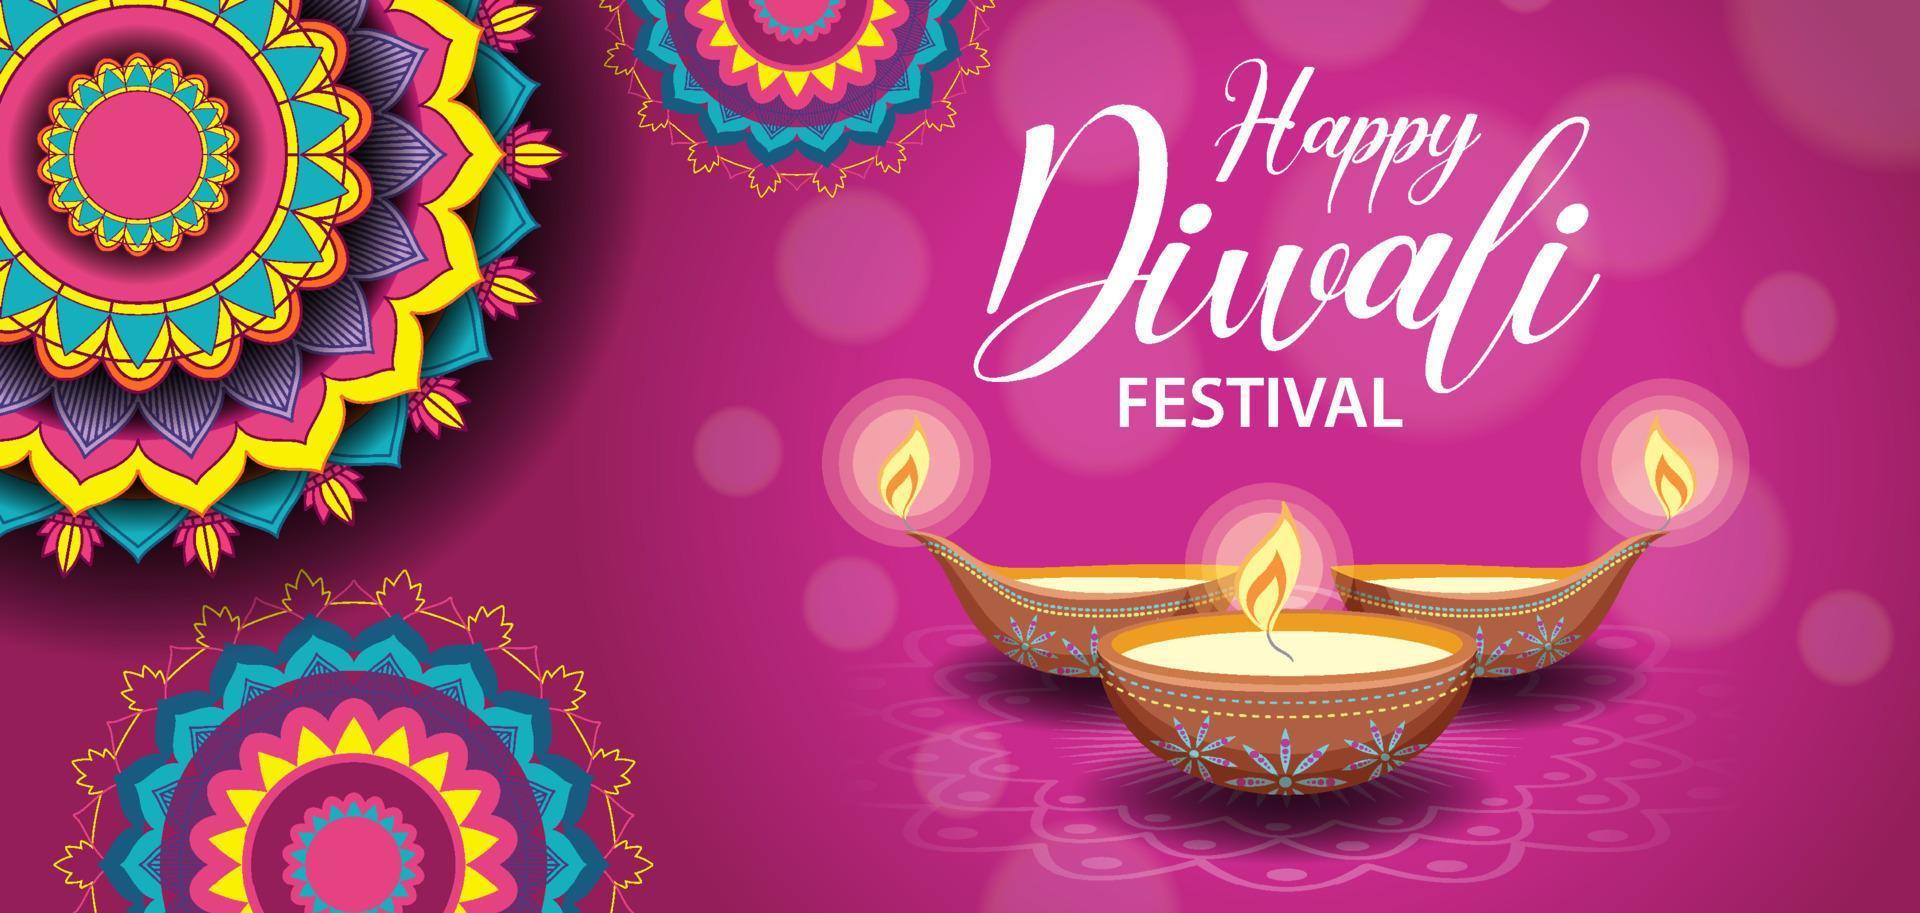 banner felice del festival indiano di diwali vettore